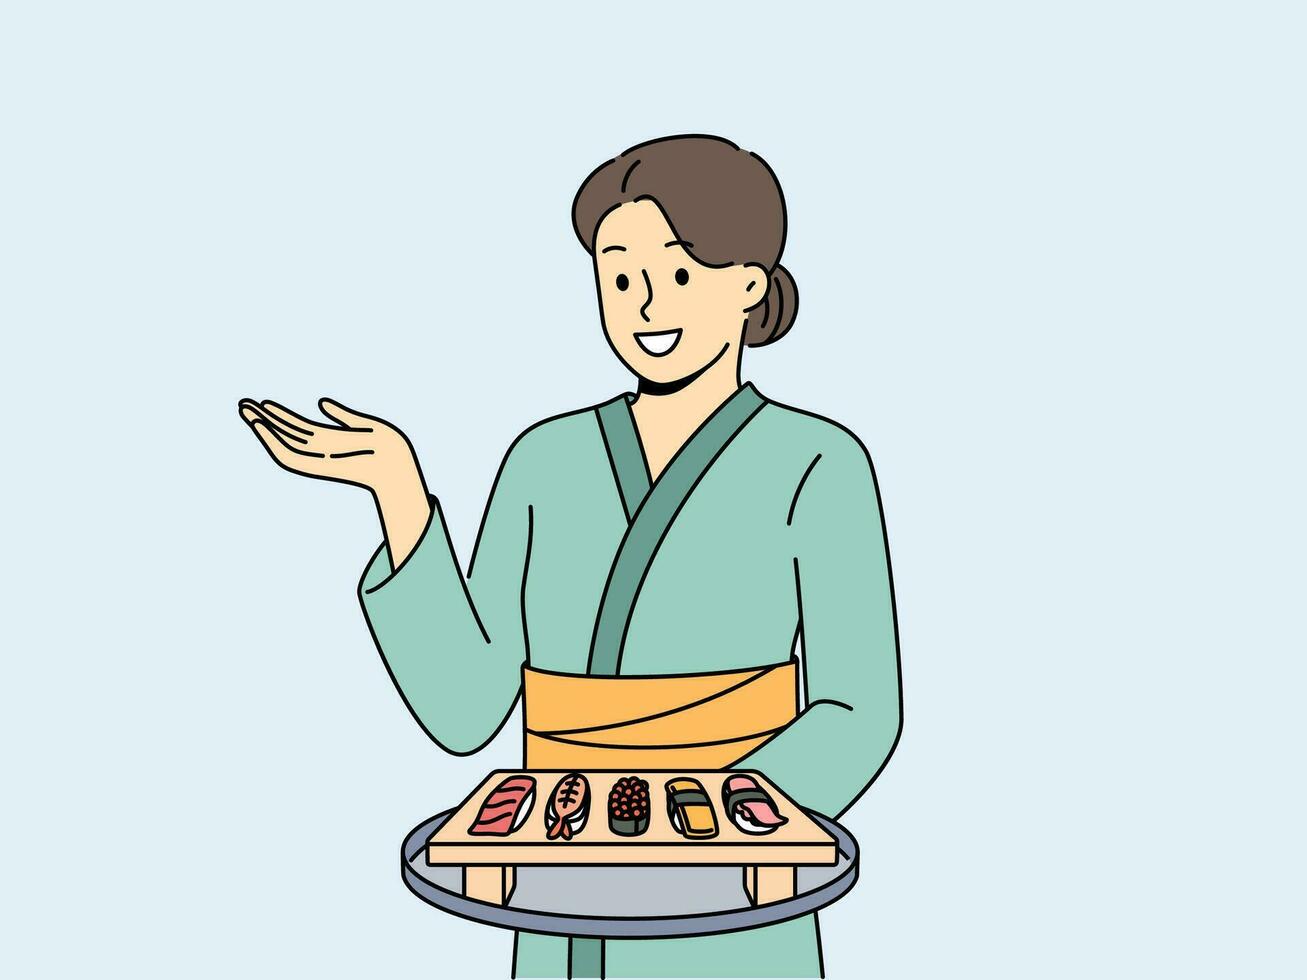 Frau Sushi Meister mit maki Vorspeise auf hölzern Tablett gekleidet im traditionell asiatisch Kimono. Mädchen funktioniert im japanisch Essen Restaurant Portion Sushi von Reis und frisch Meeresfrüchte zu Besucher. vektor